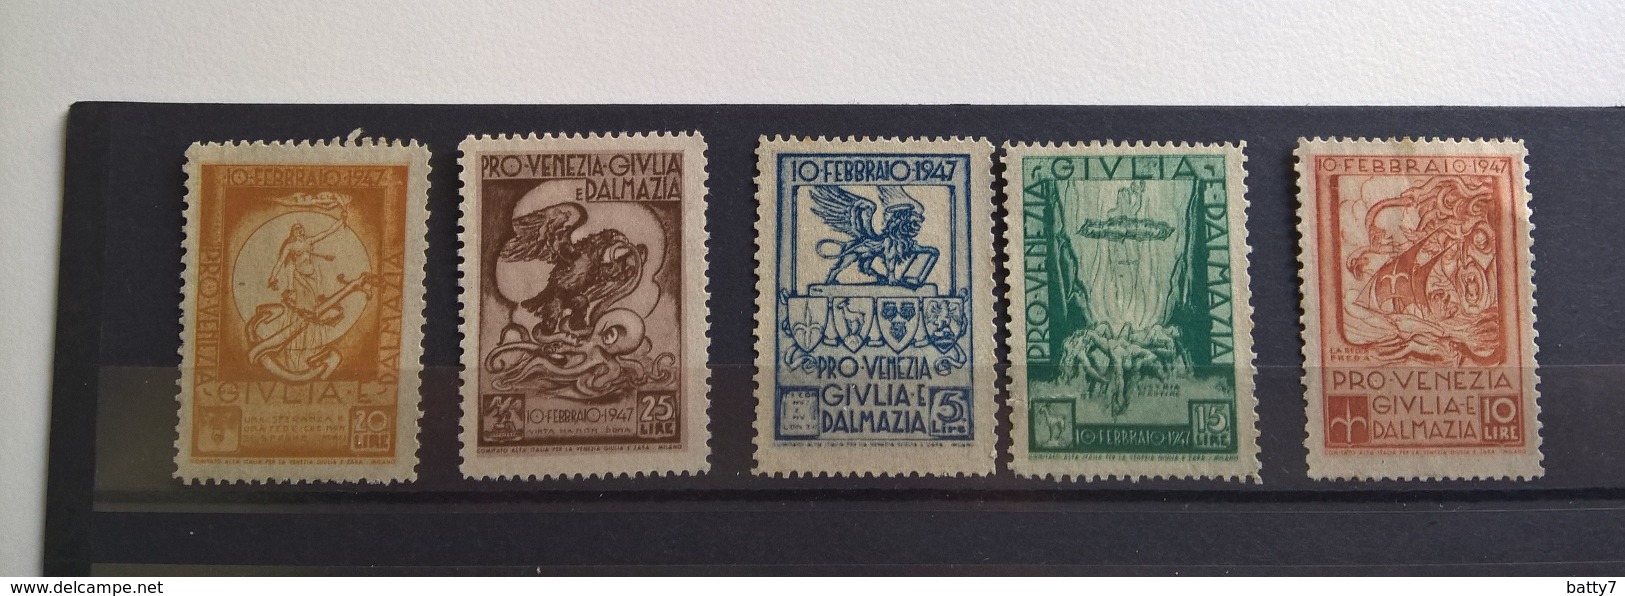 PRO VENEZIA GIULIA 1947 - Steuermarken